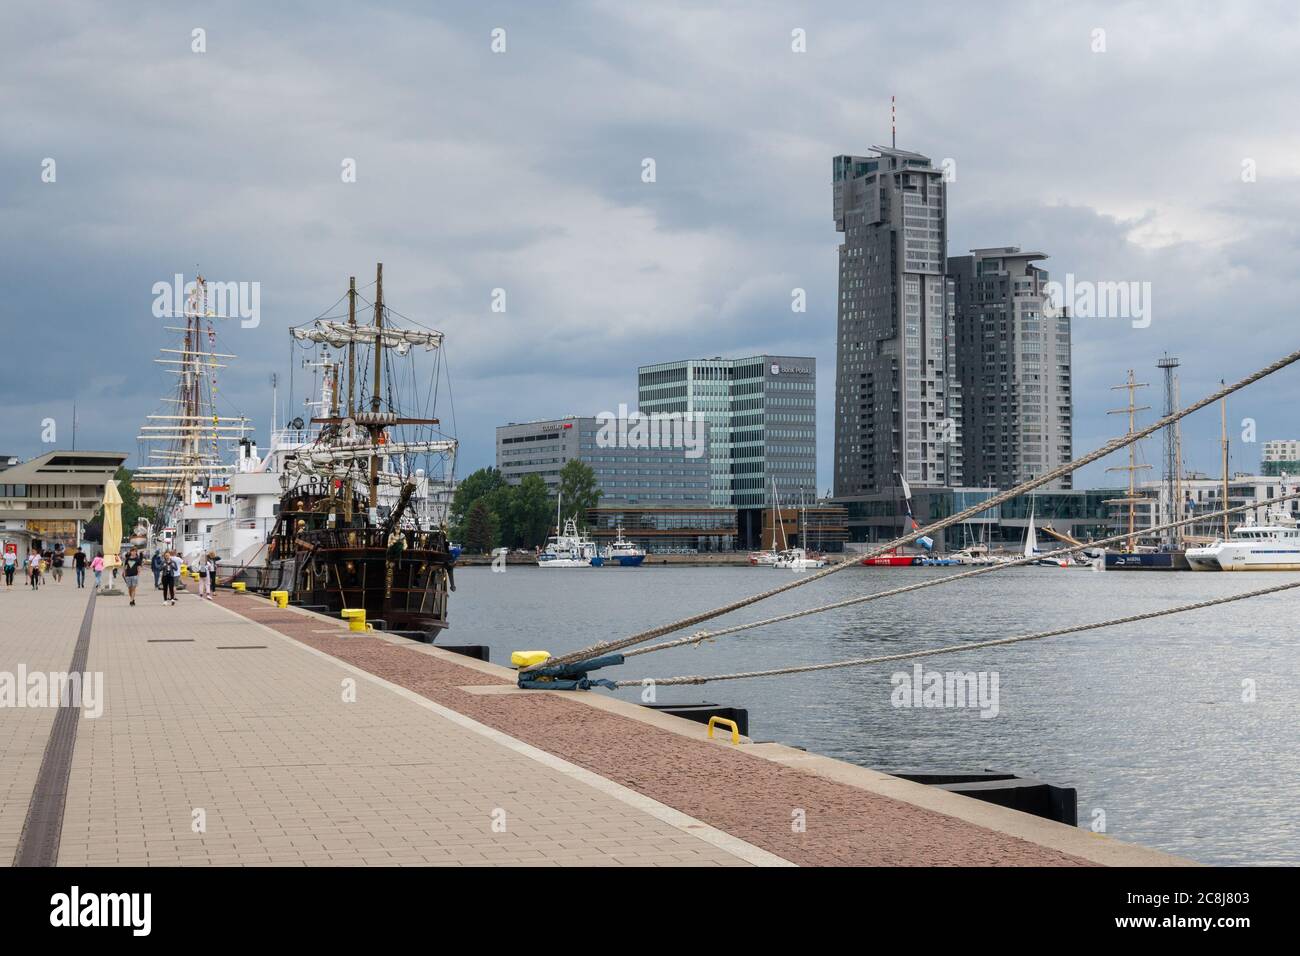 Gdynia, Polen - 30. Juni 2020: Strandpromenade mit Blick auf die Sea Towers Wolkenkratzer in Gdynia Stockfoto